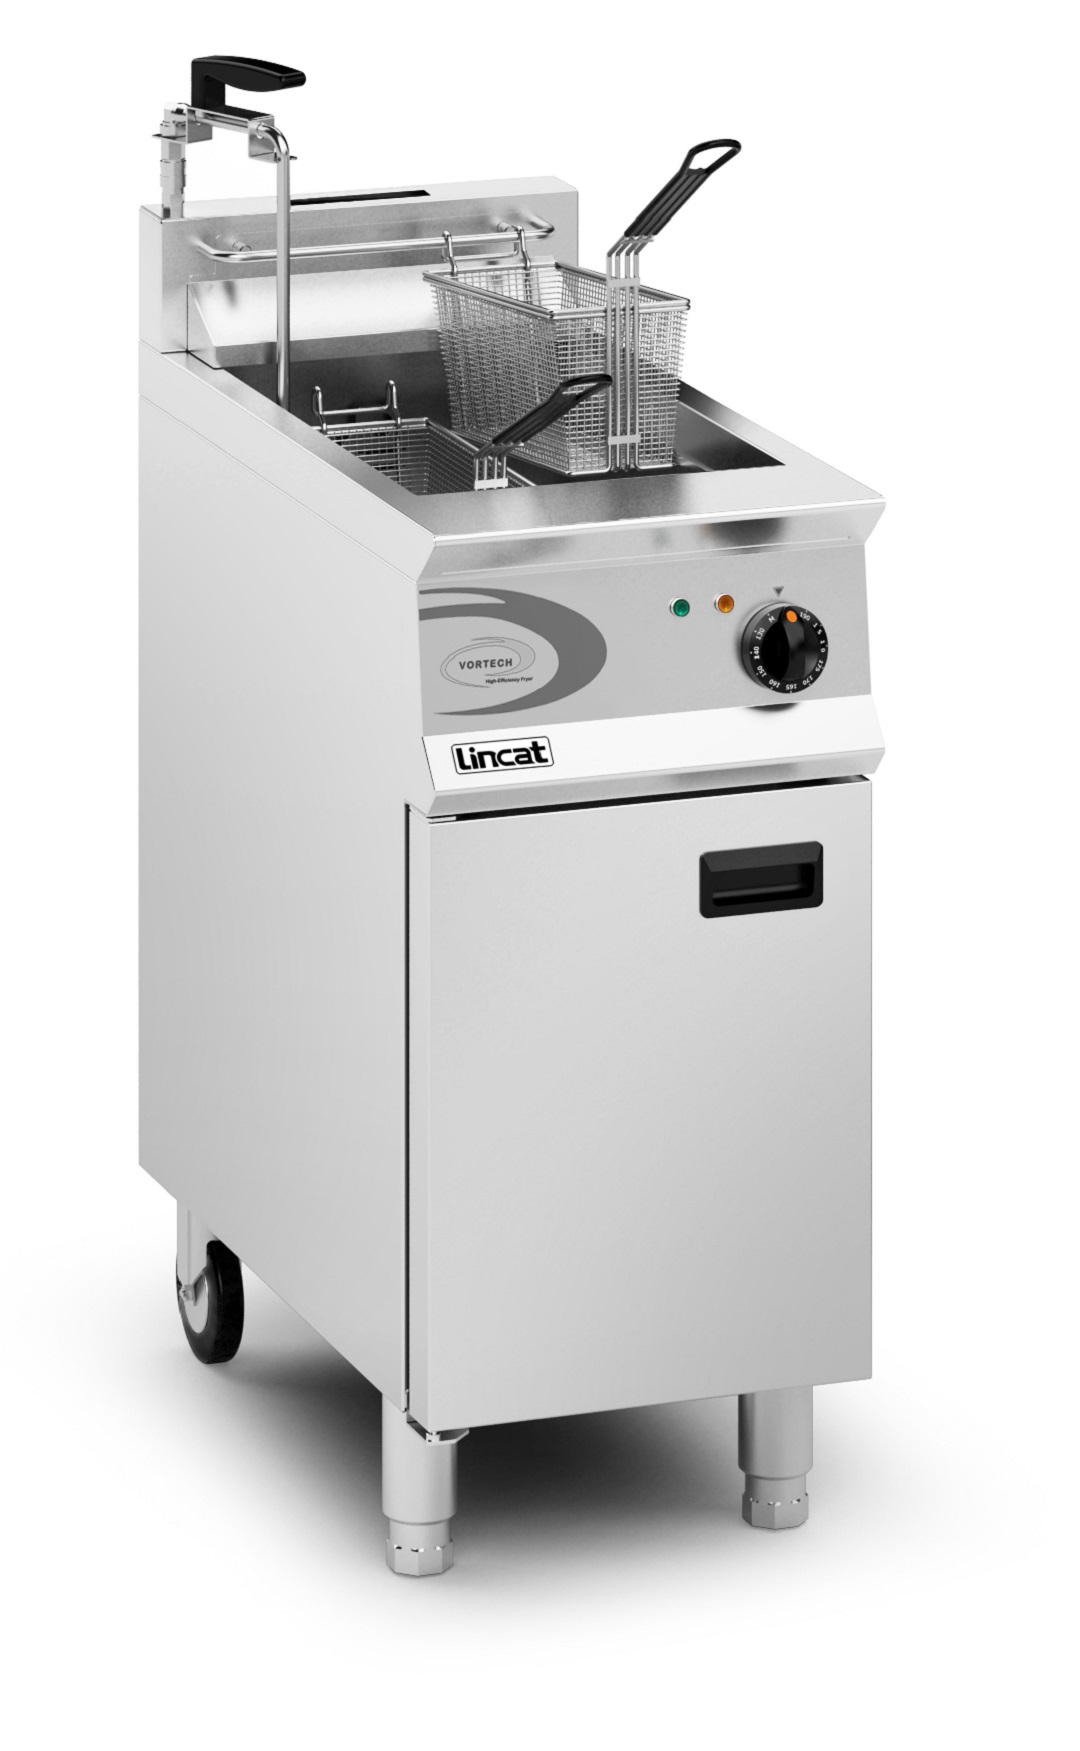 Lincat Opus 800 Vortech OG8115/OP Gas Fryer With Built In Filtration